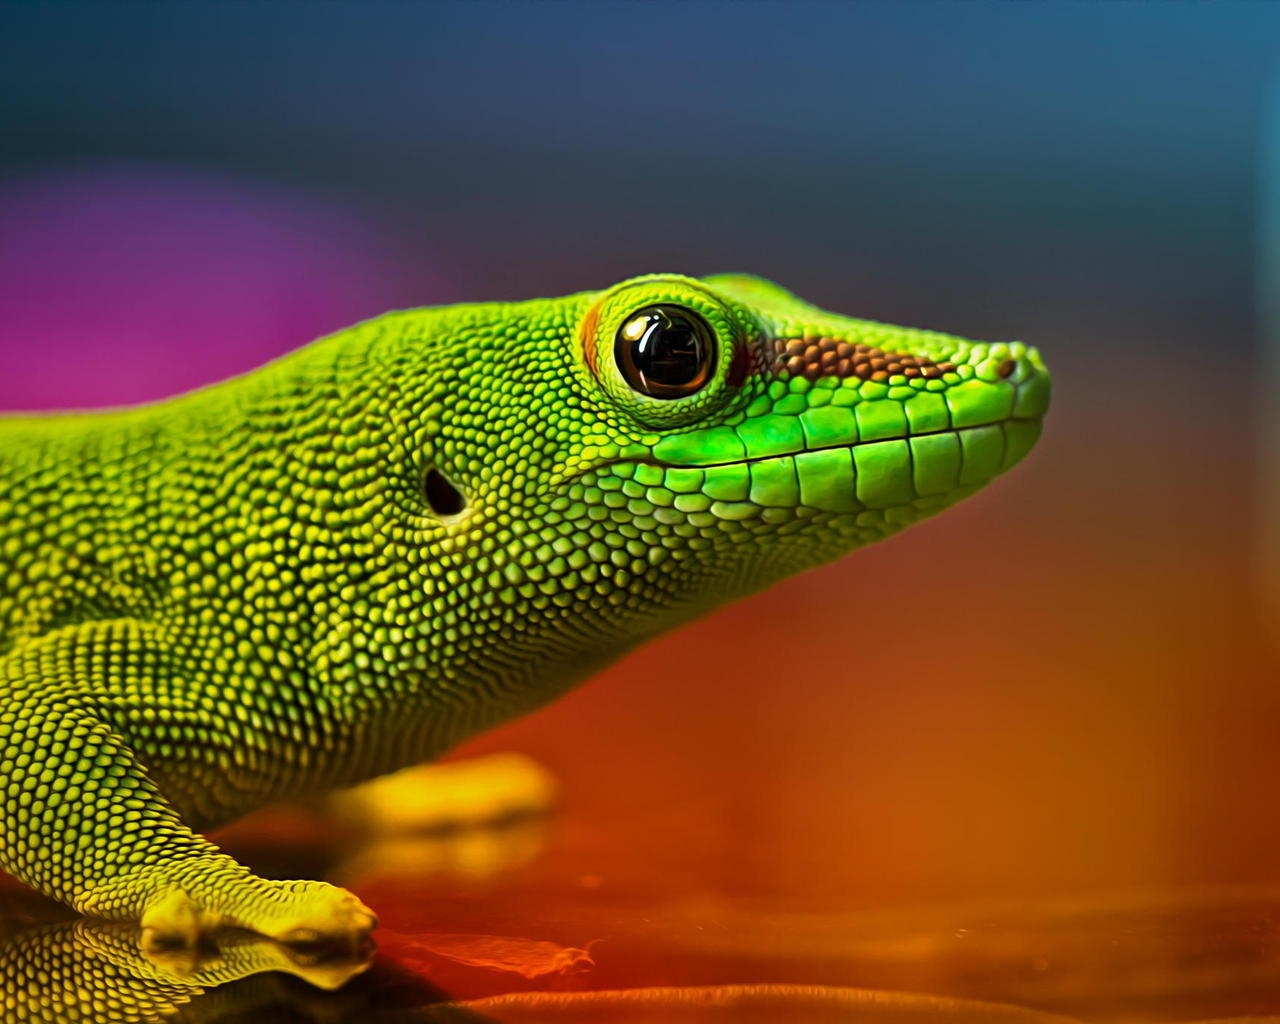 Green Lizard for 1280 x 1024 resolution